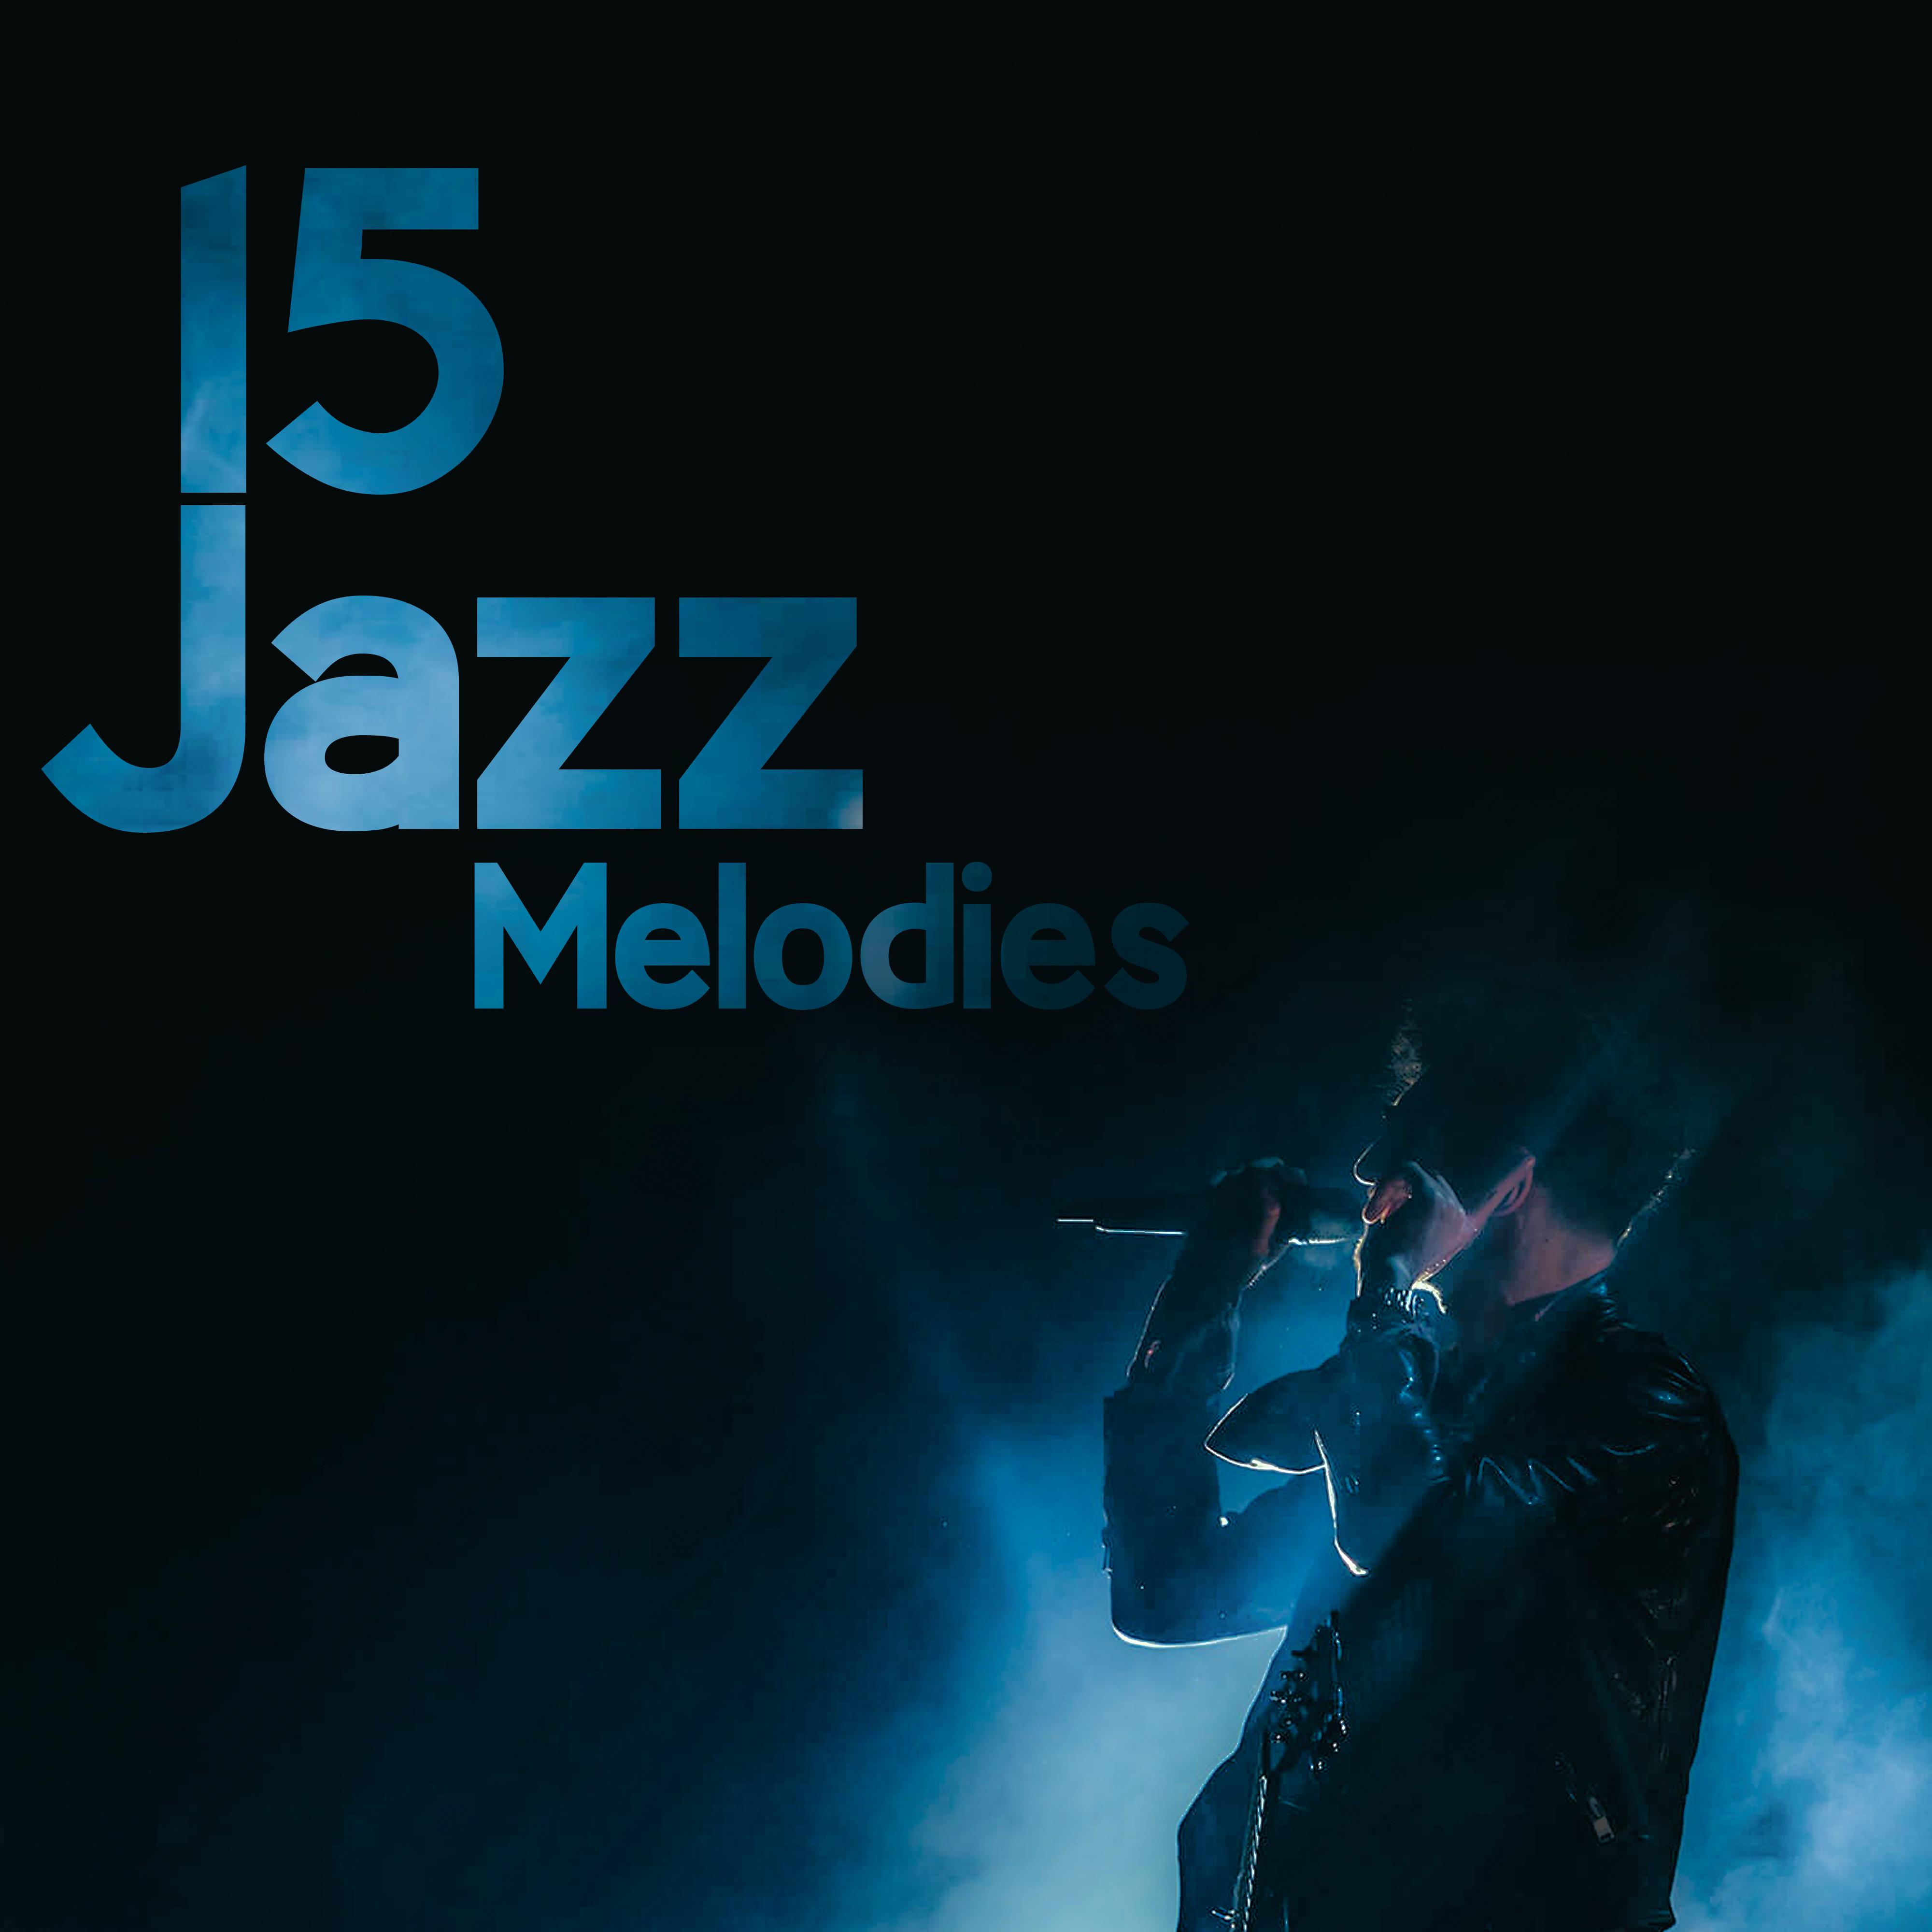 15 Jazz Melodies